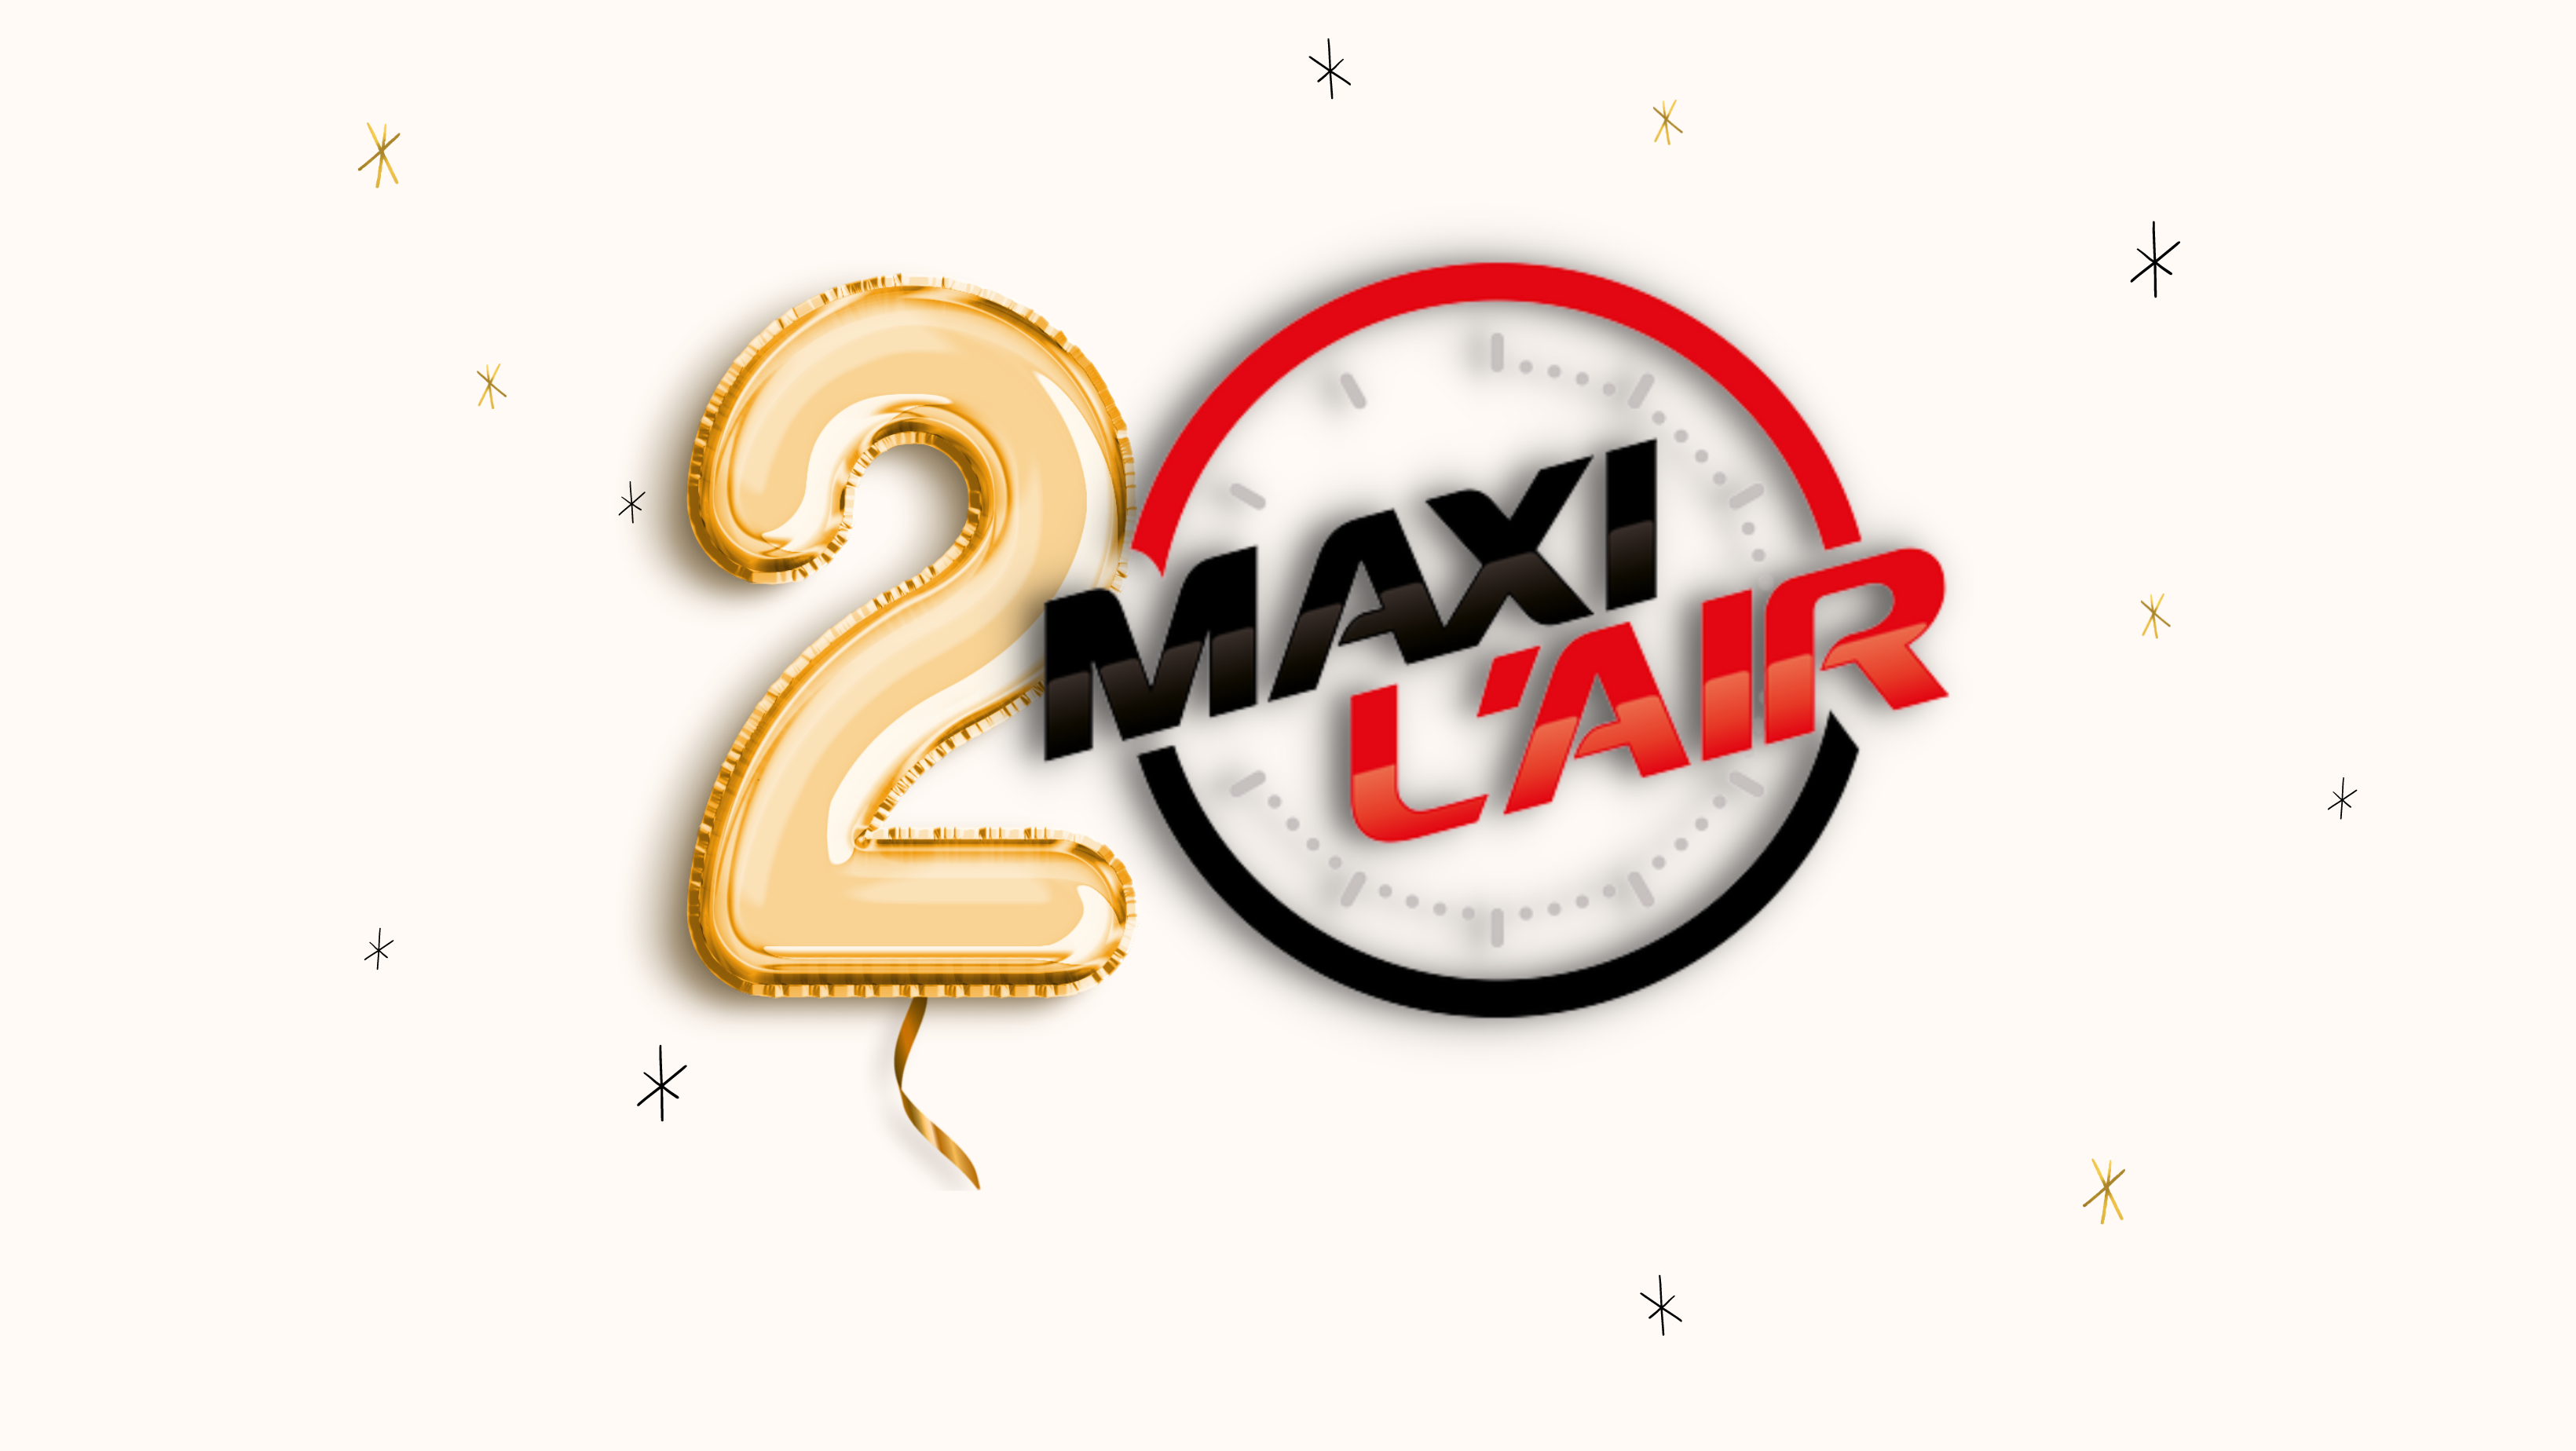 Maxi L'Air : 20 ans de radio et beaucoup de projets dans les cartons